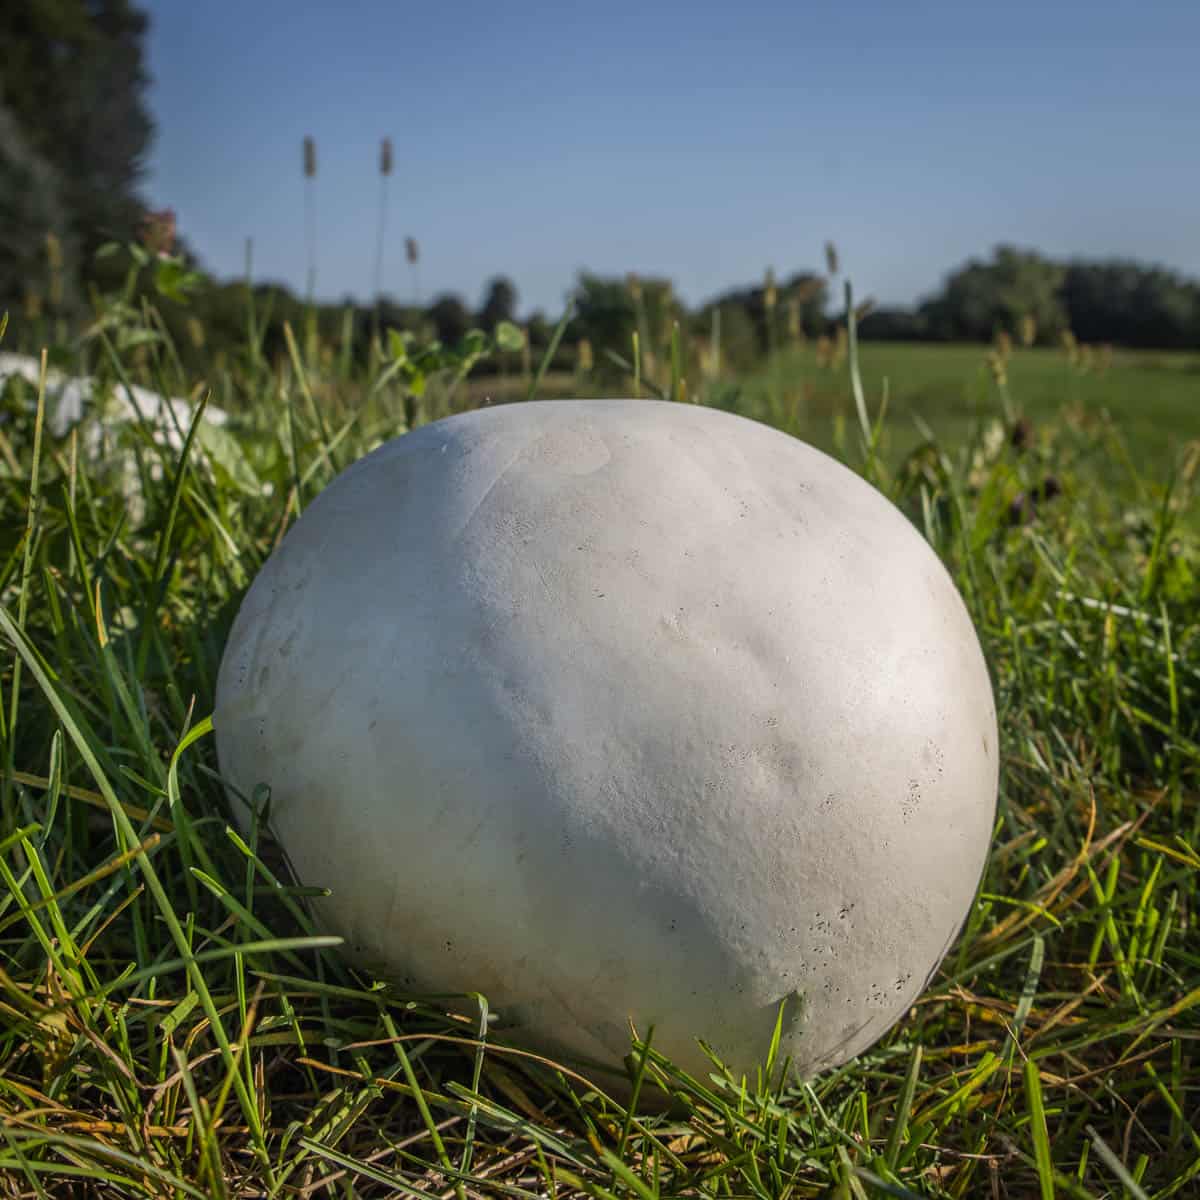 Puff balls or death caps? : r/Mushrooms